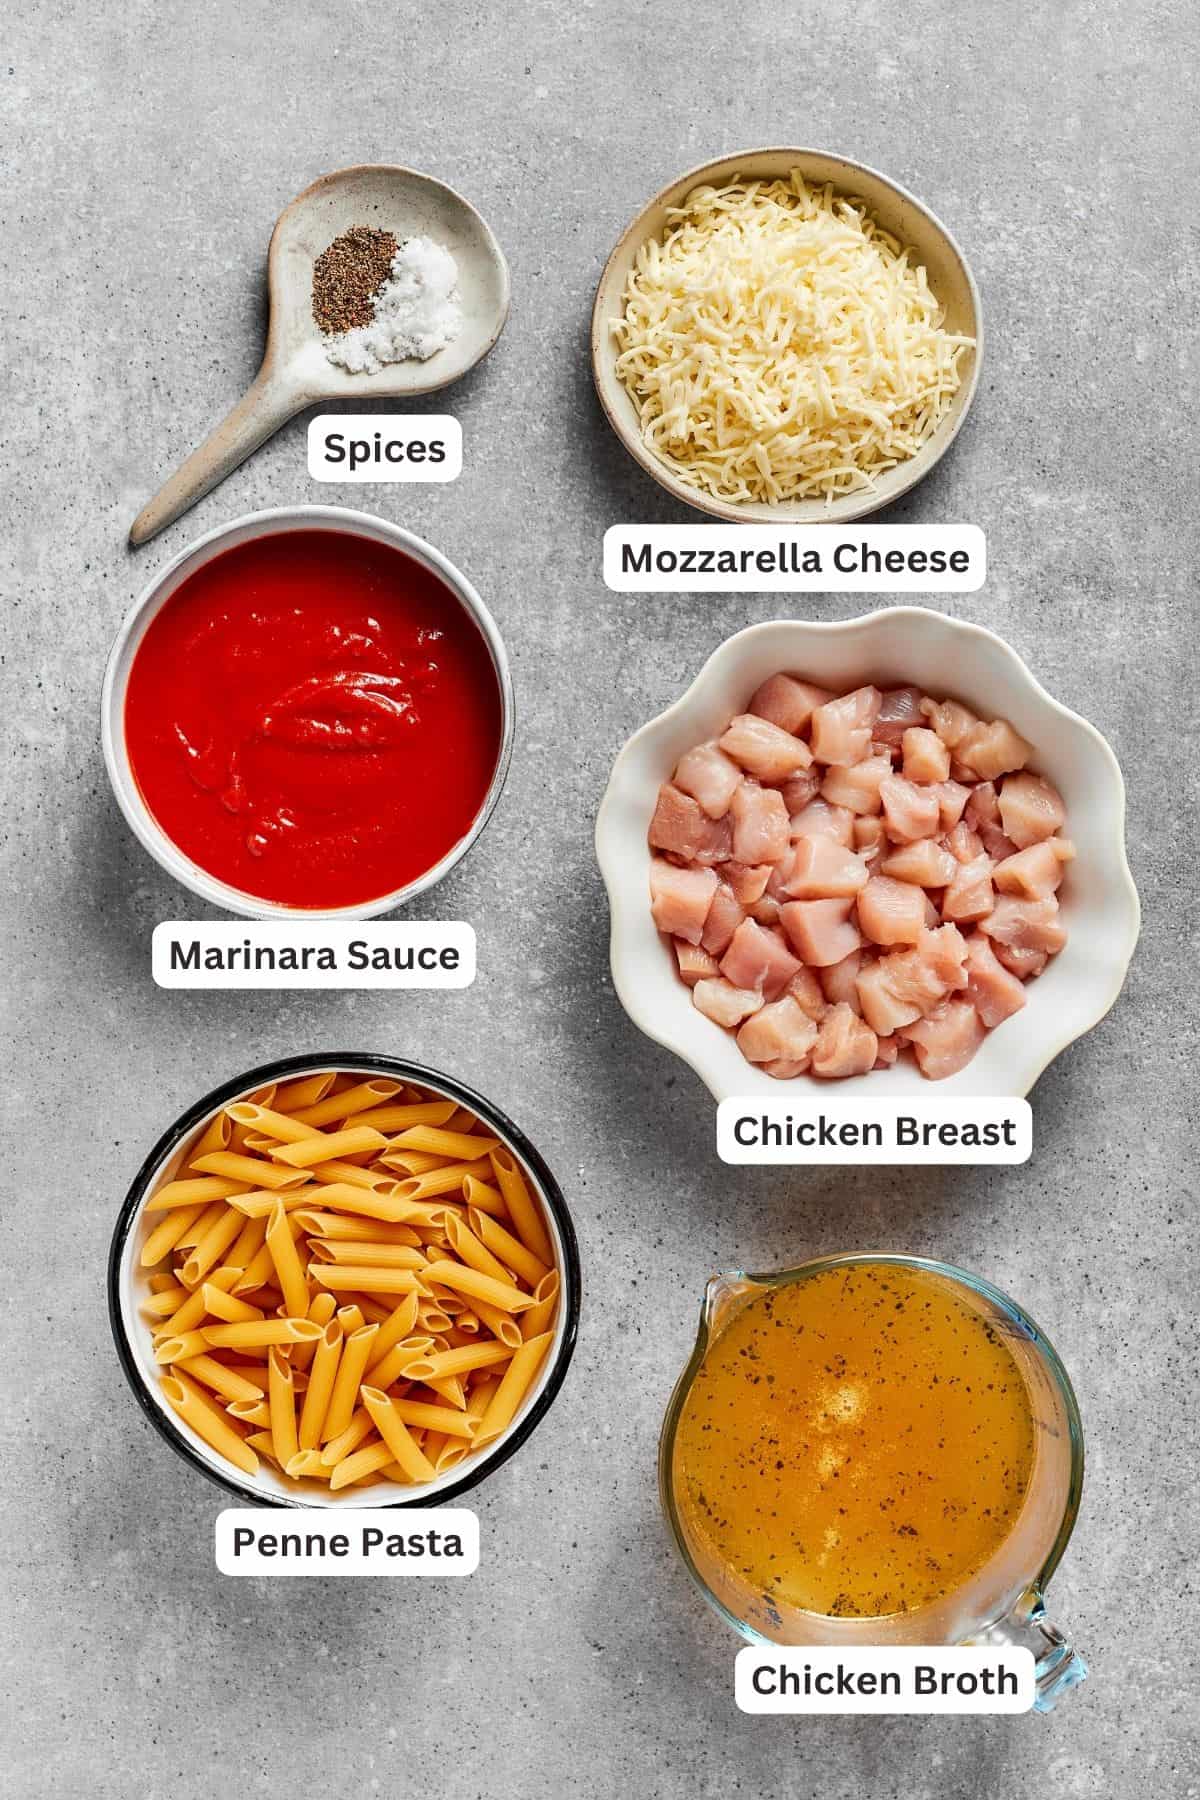 Ingredients for chicken parmesan casserole are shown: pasta, sauce, chicken, mozzarella, spices, chicken broth.